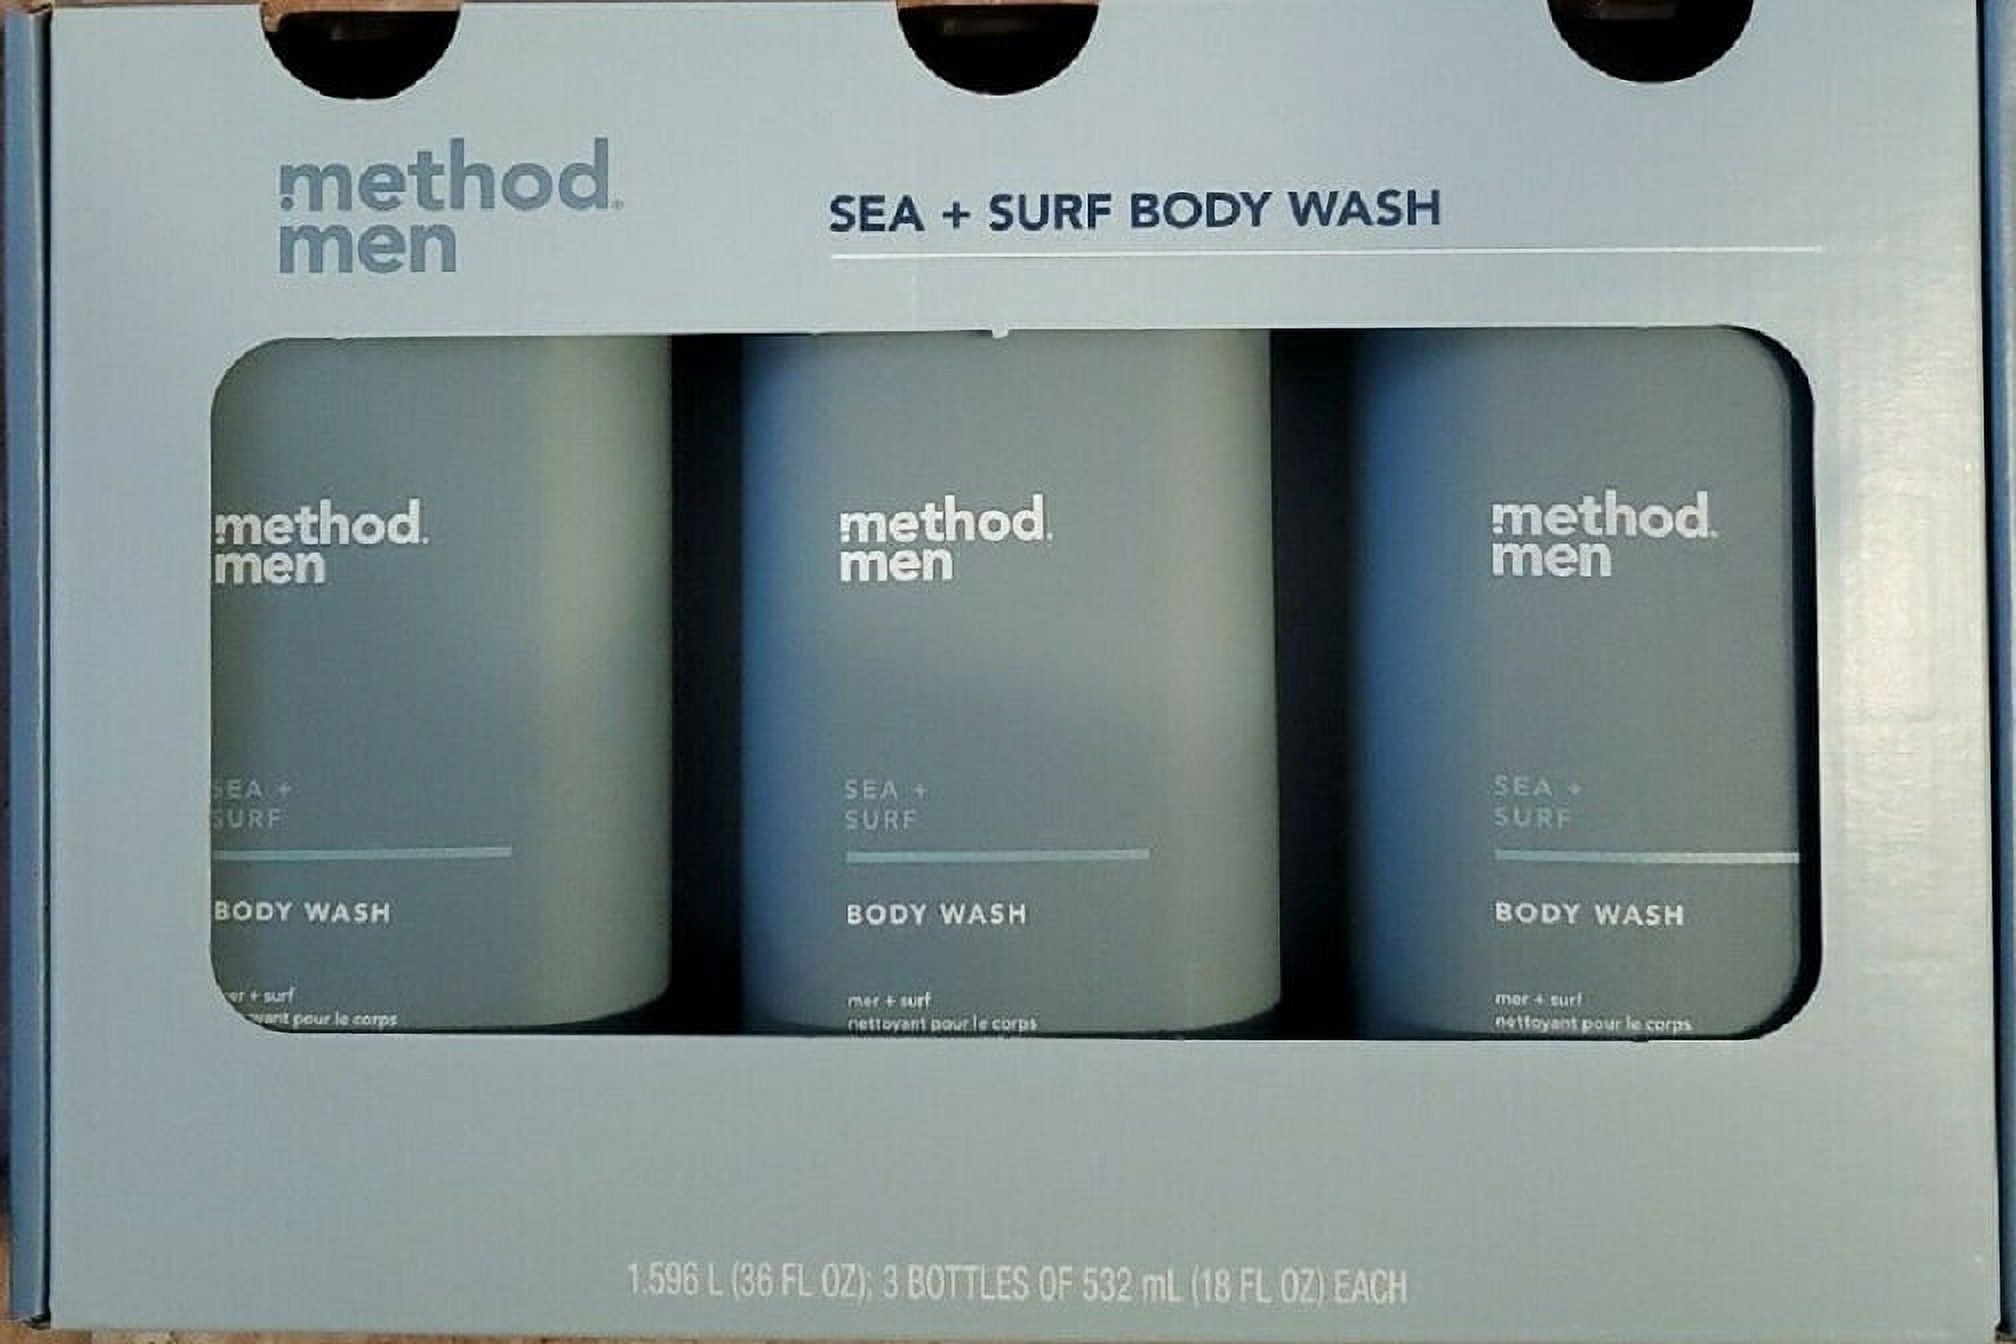 body wash - sea + surf, 18 fl oz